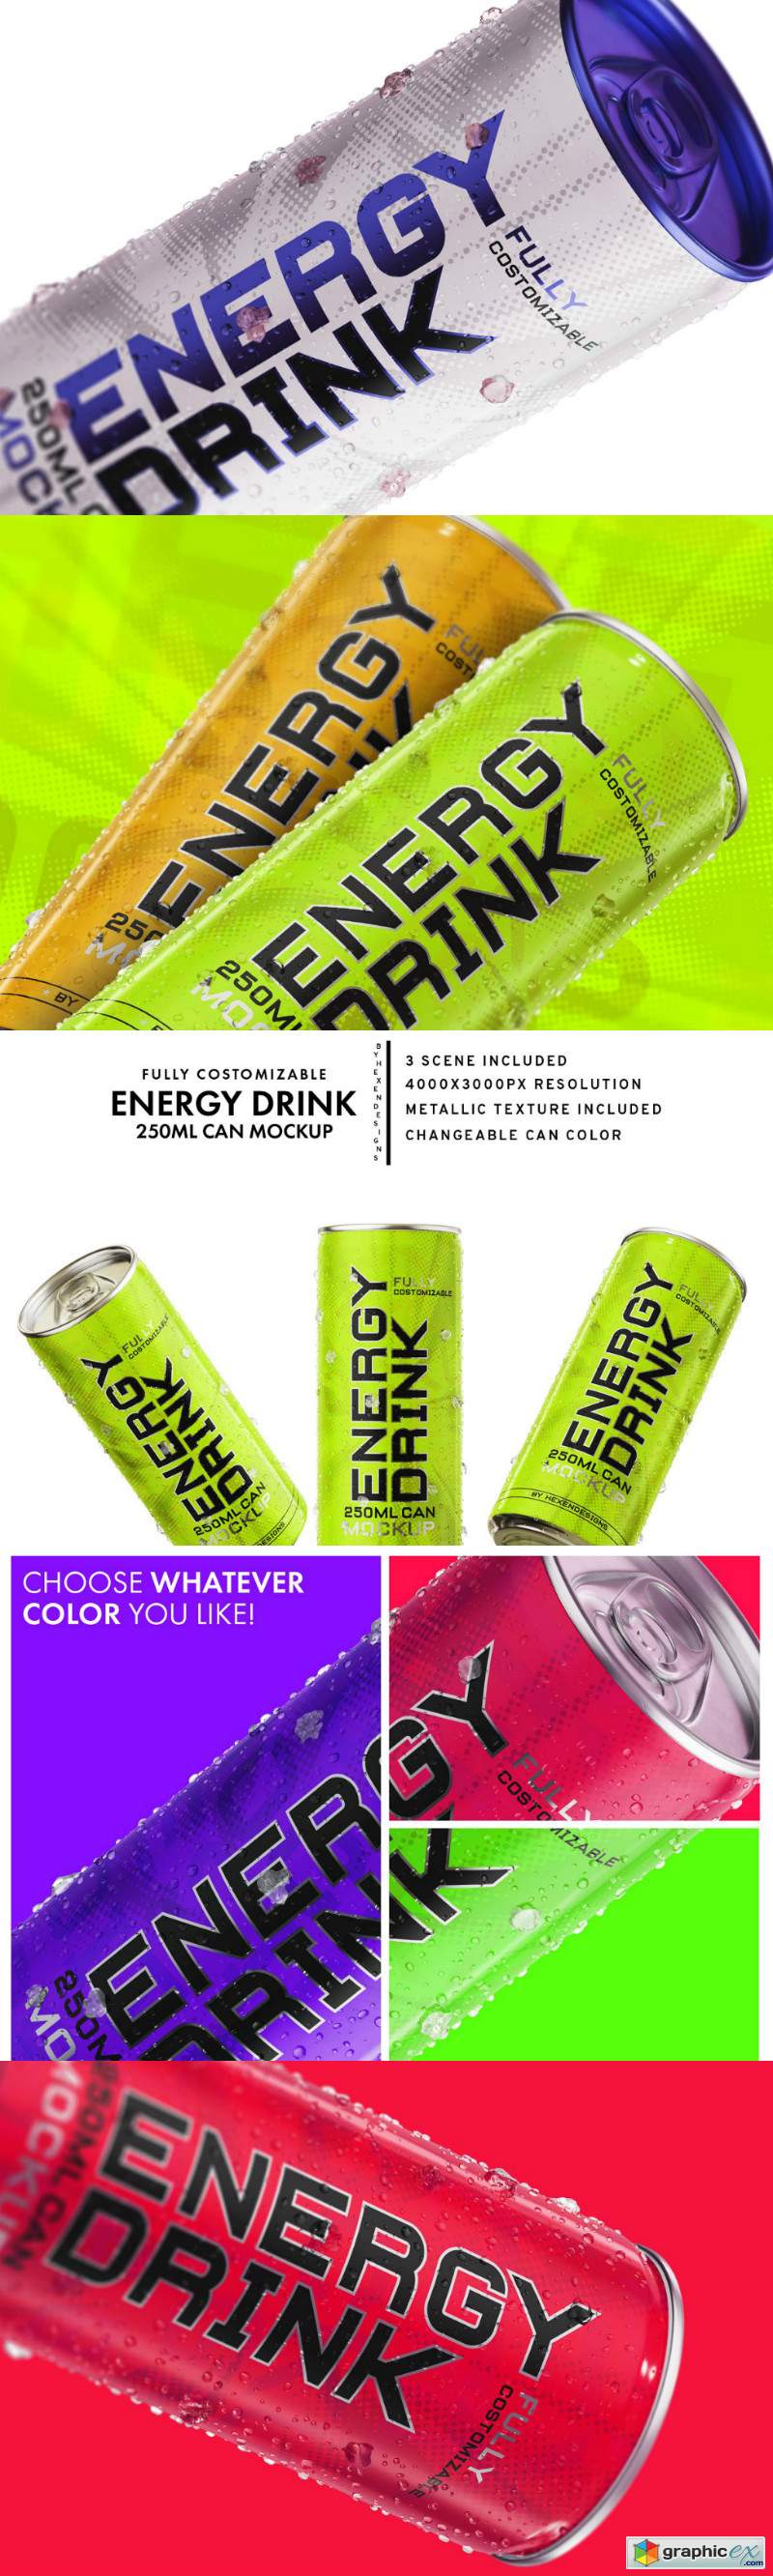 Energy Drink Mockup